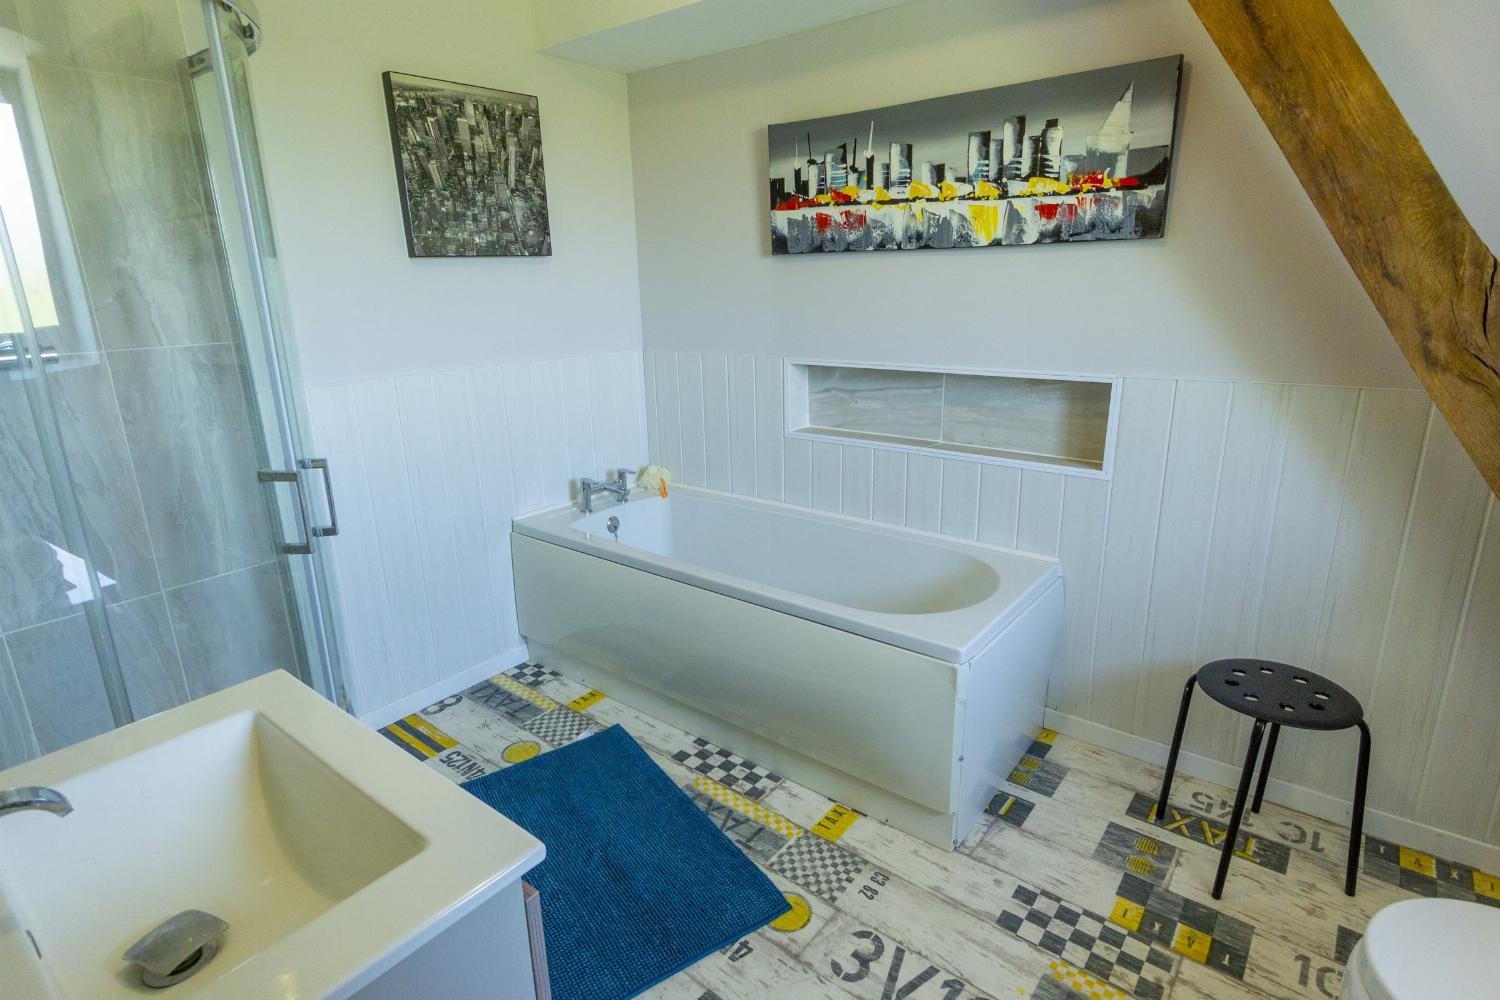 Salle de bain | Location maison en Dordogne